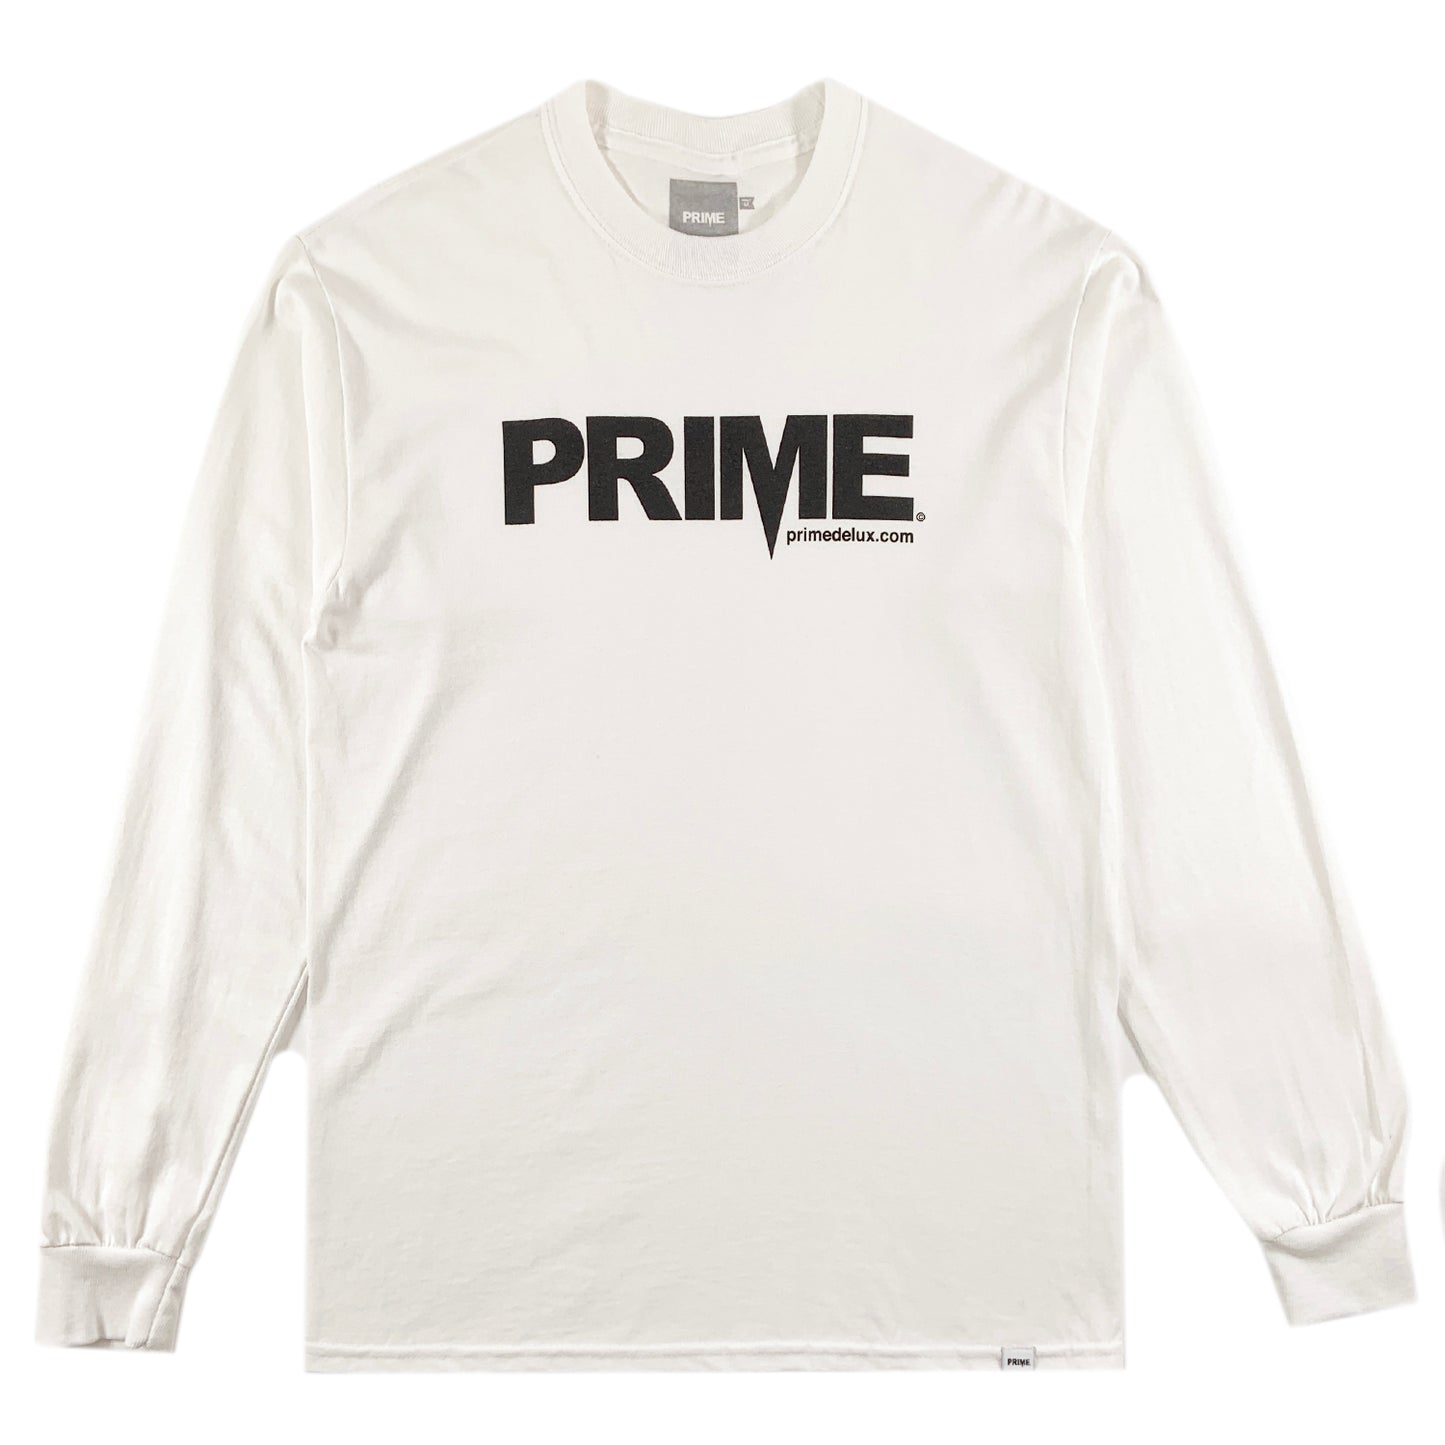 PRIME DELUX OG PREMIUM LONG SLEEVE T-SHIRT - WHITE / BLACK - Prime Delux Store